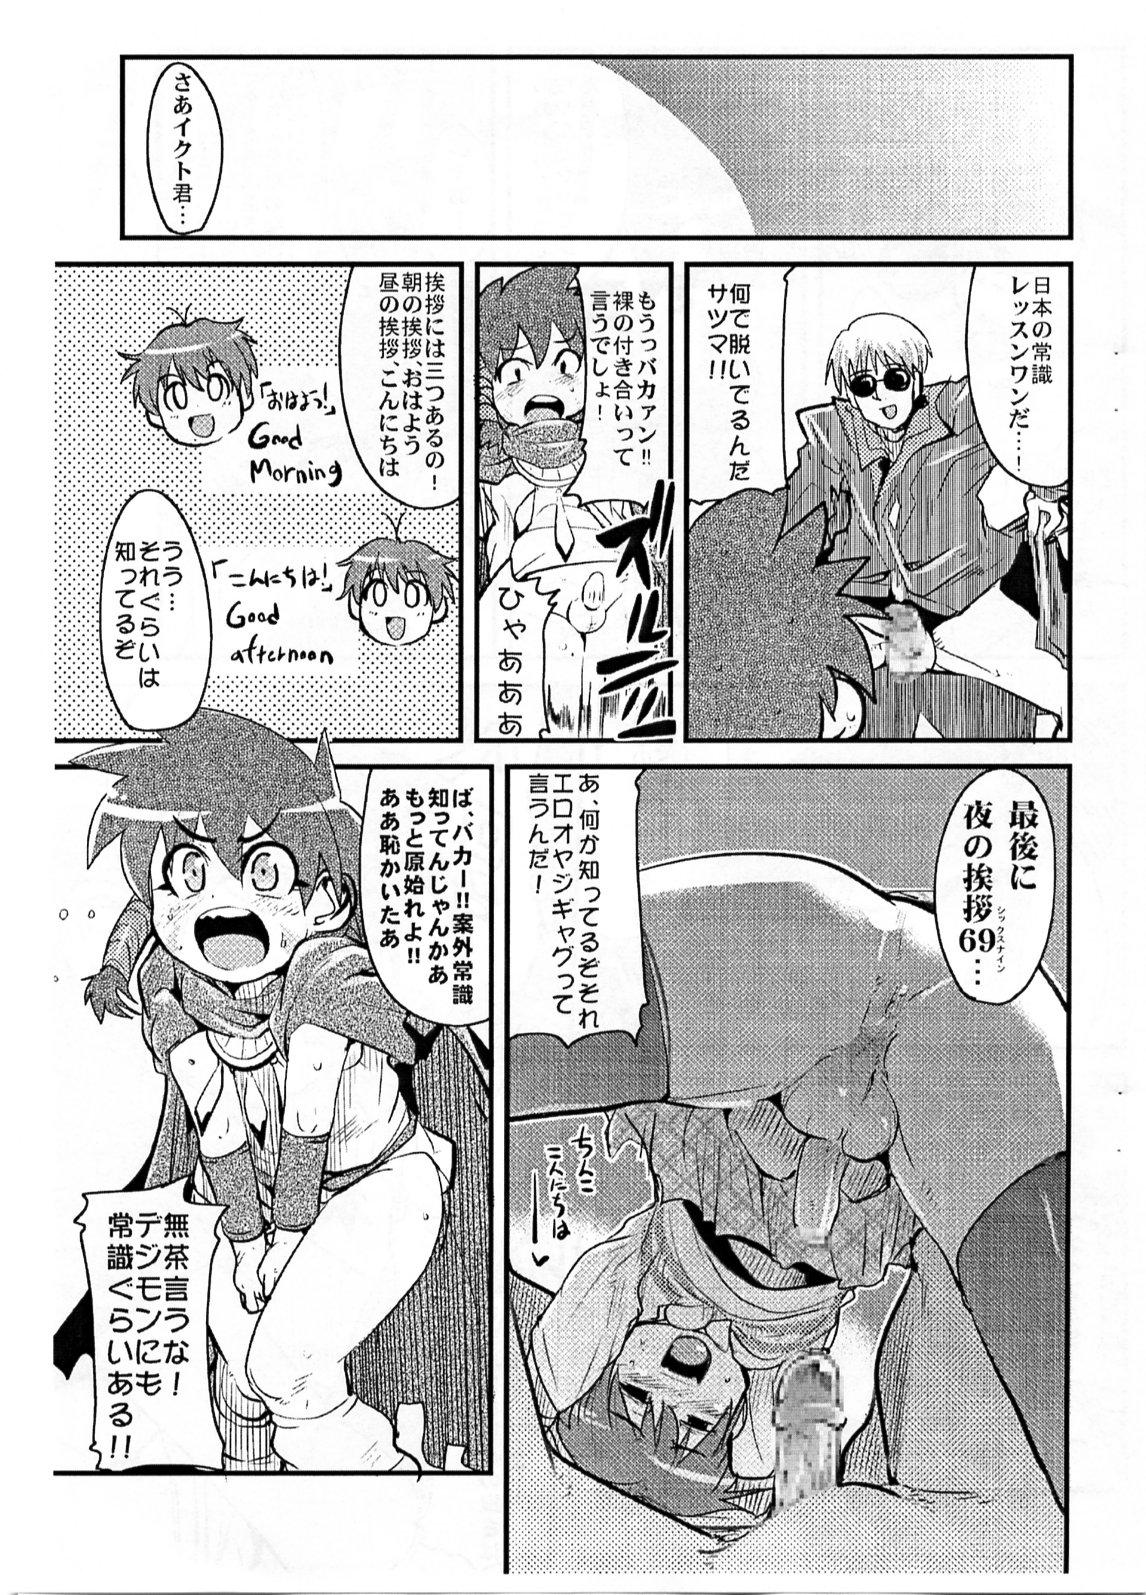 Casting Yaseiji ni iroiro oshieru hon nano da - Digimon savers Argentino - Page 4